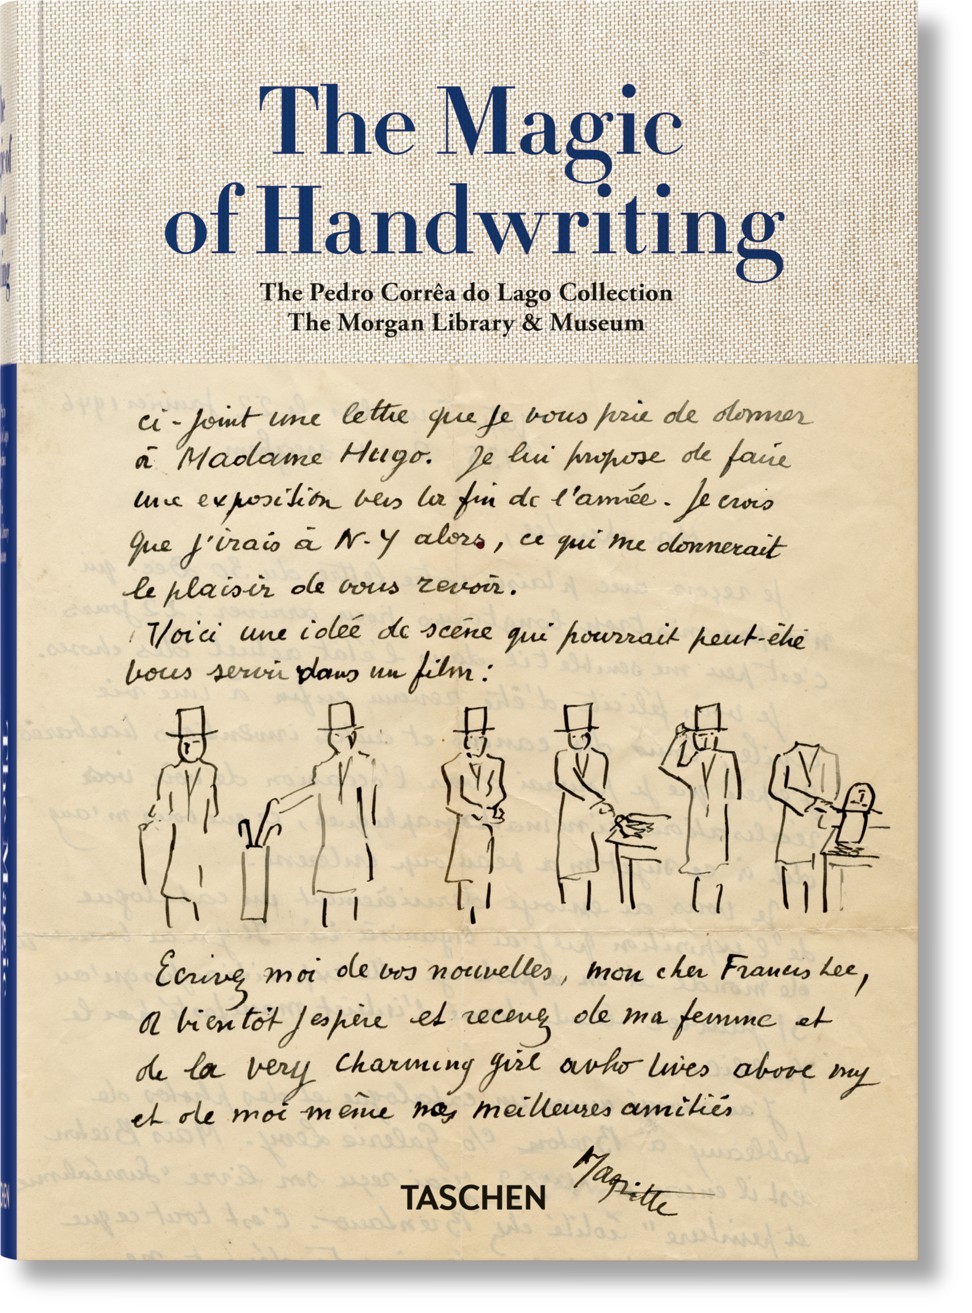 The Magic of Handwriting. Photo: Taschen